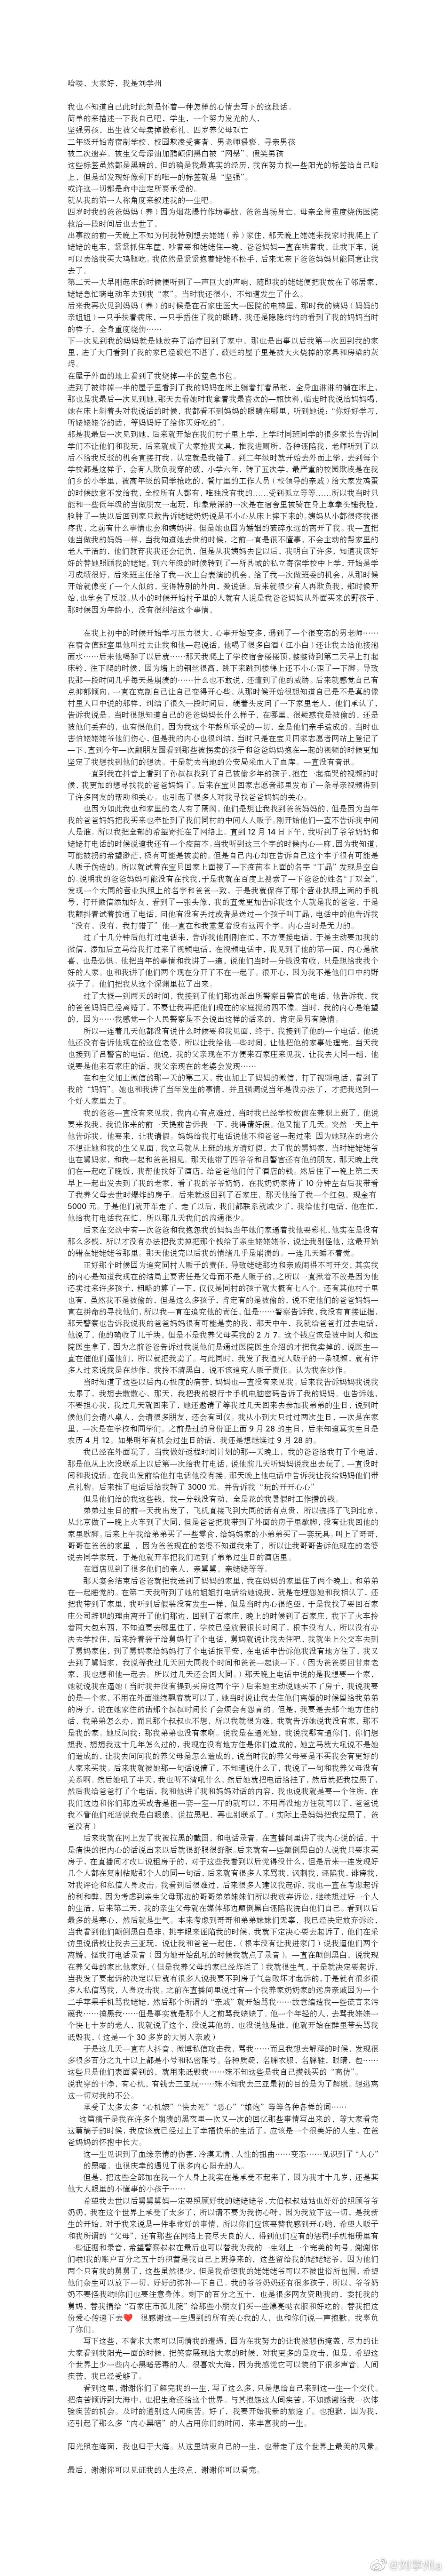 劉學州凌晨發布疑似計劃自殺的微博全文。